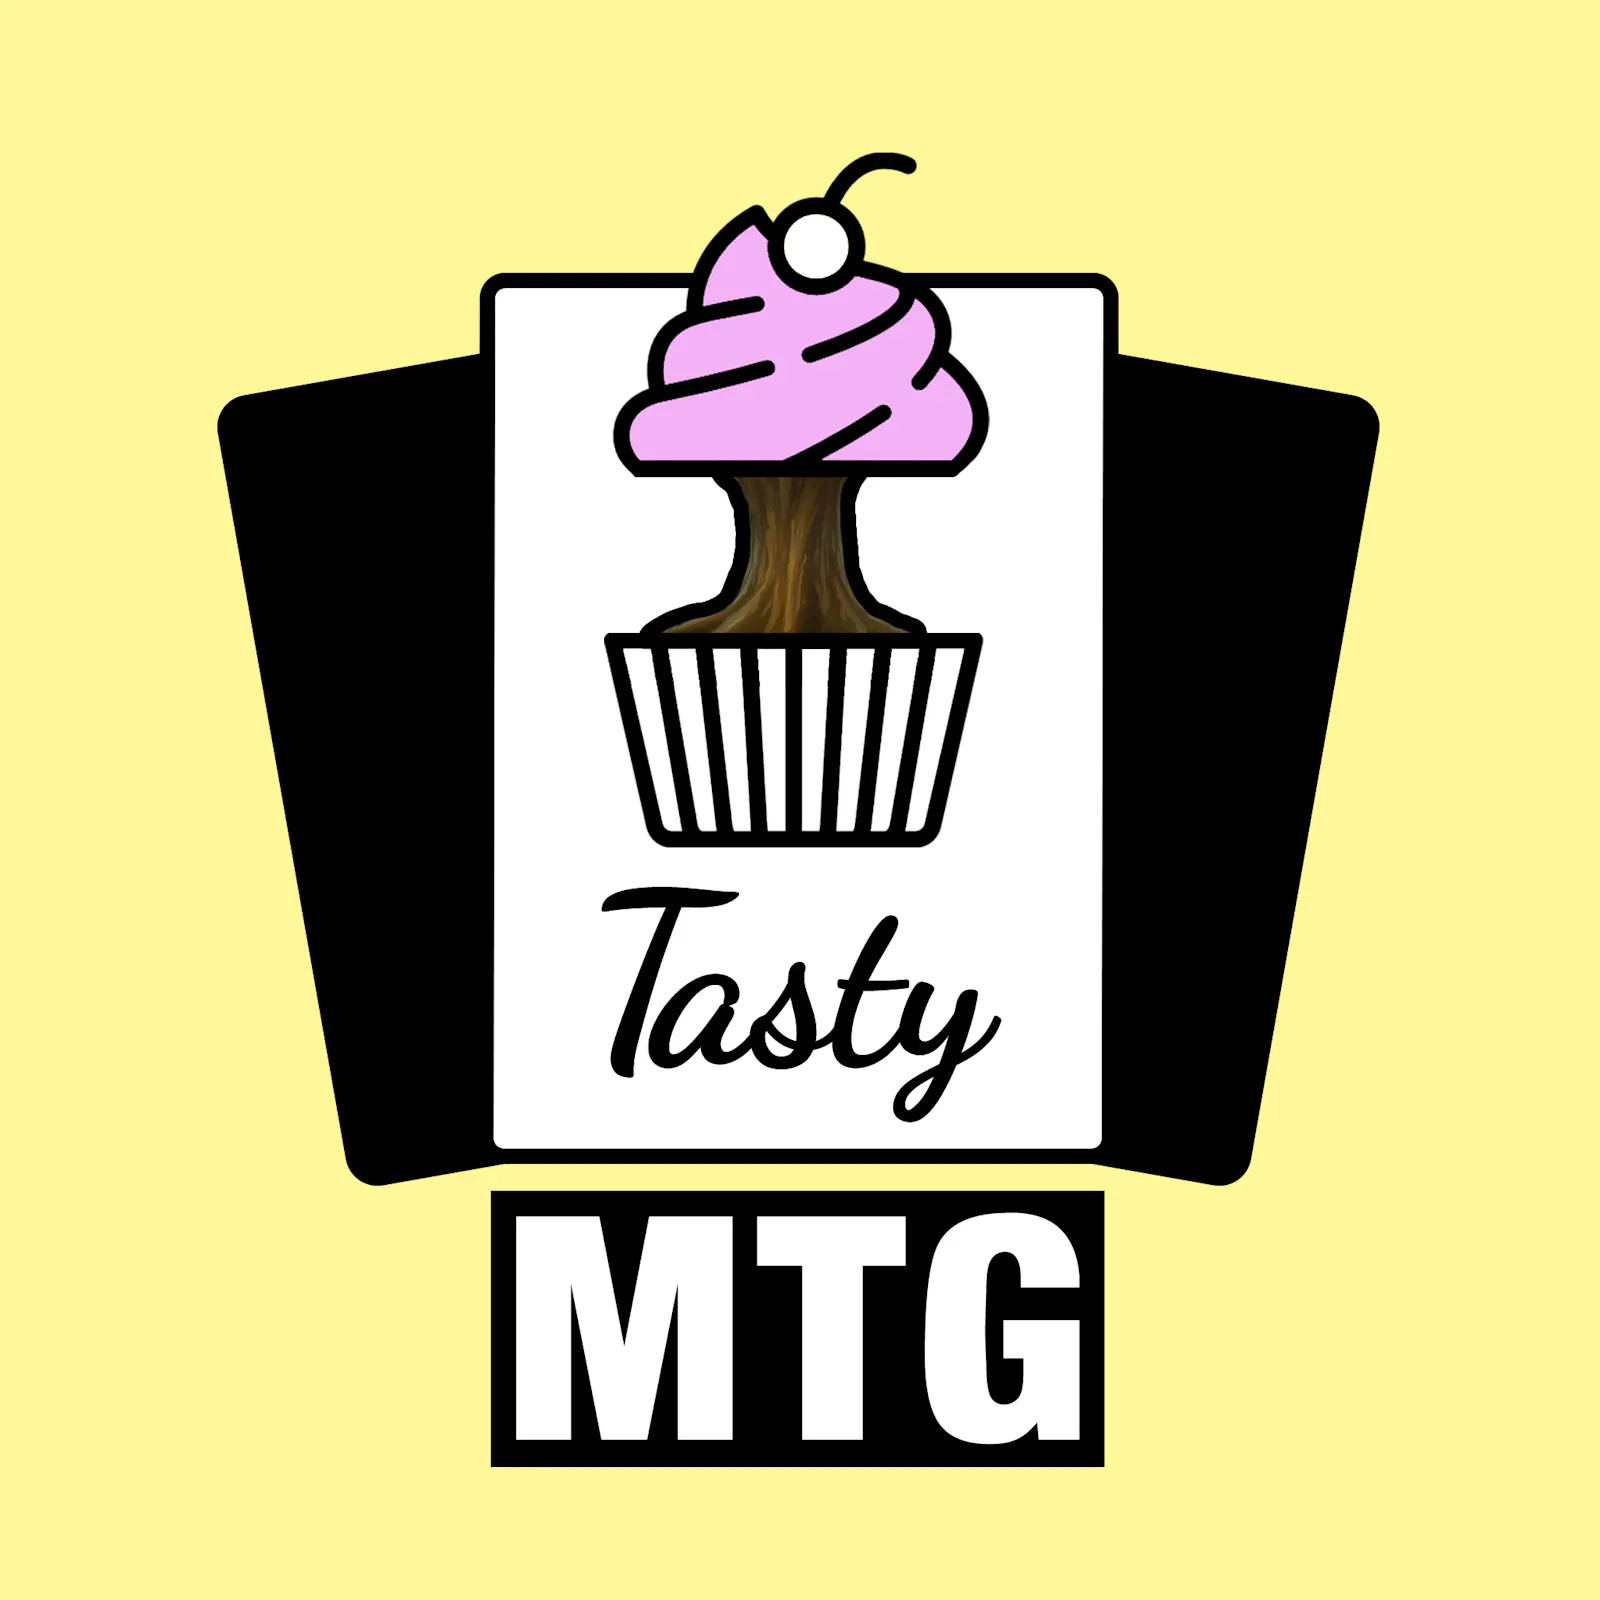 Coverbild zu Tasty MTG Folge 41 mit dem Cupcake als Weltenbaum